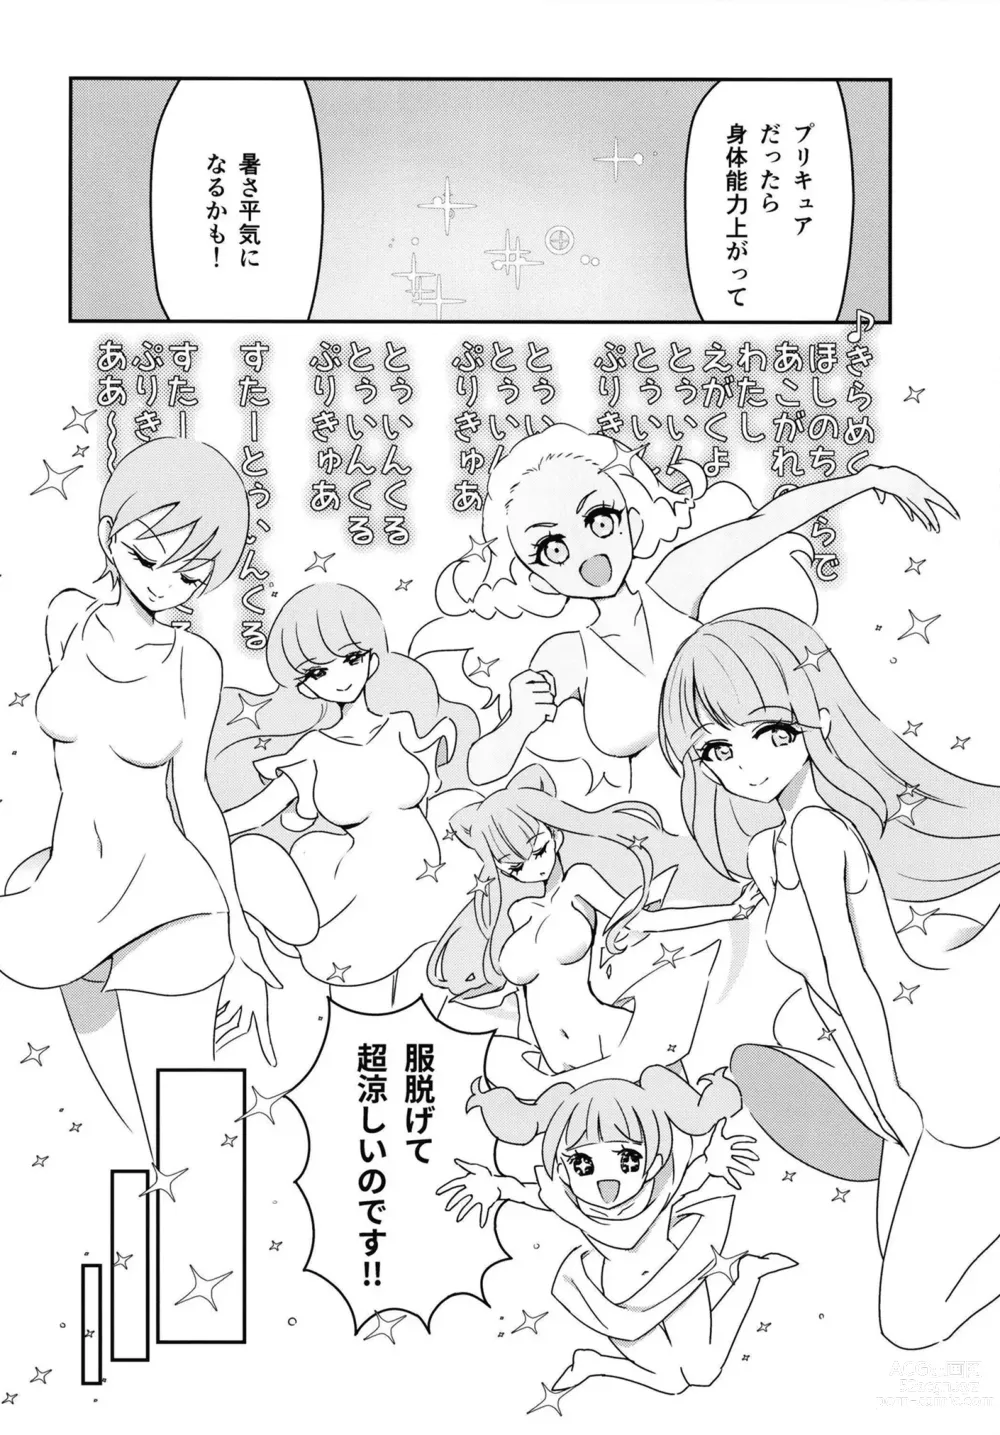 Page 5 of doujinshi Sho